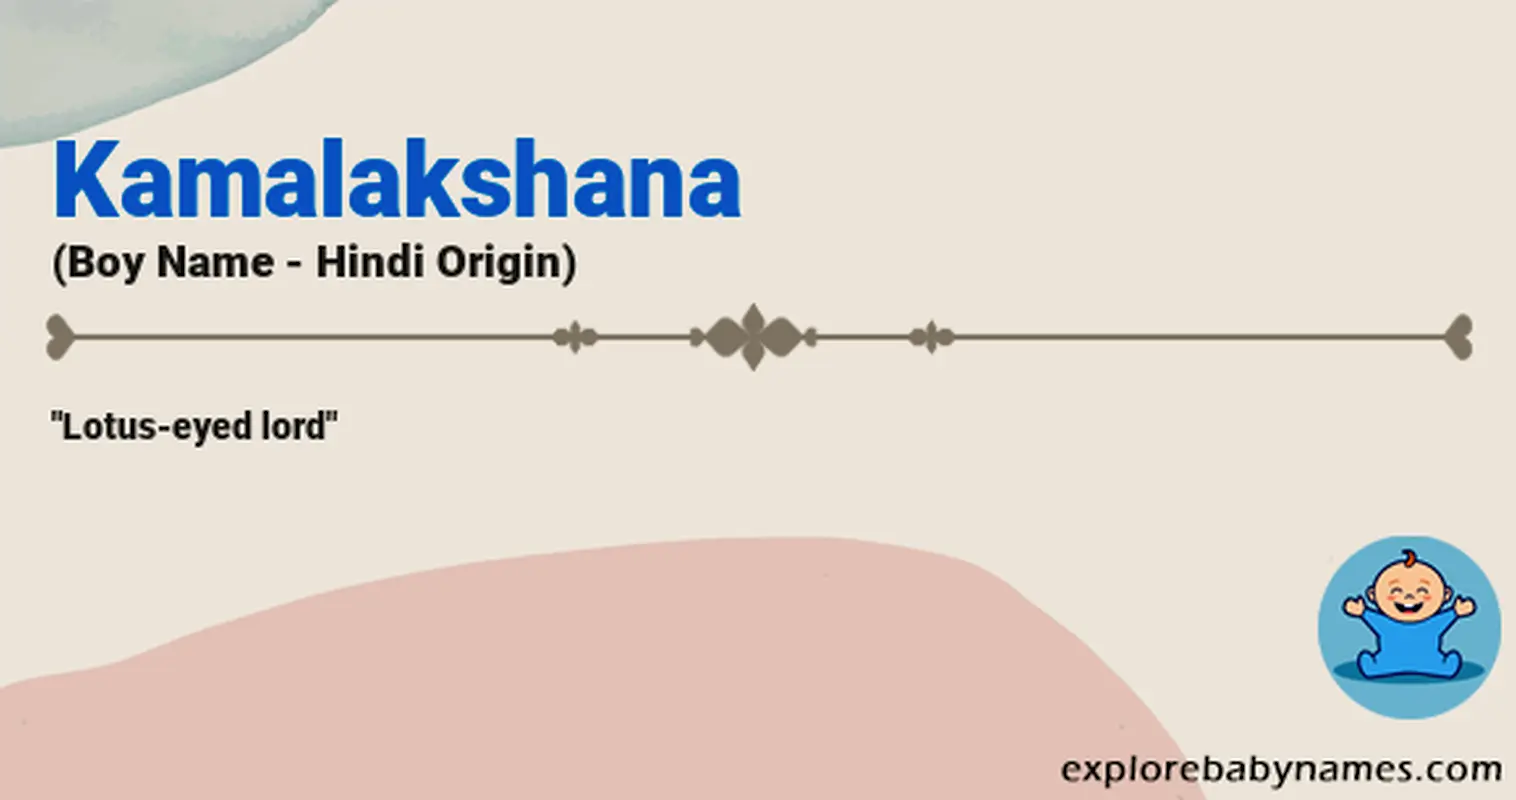 Meaning of Kamalakshana